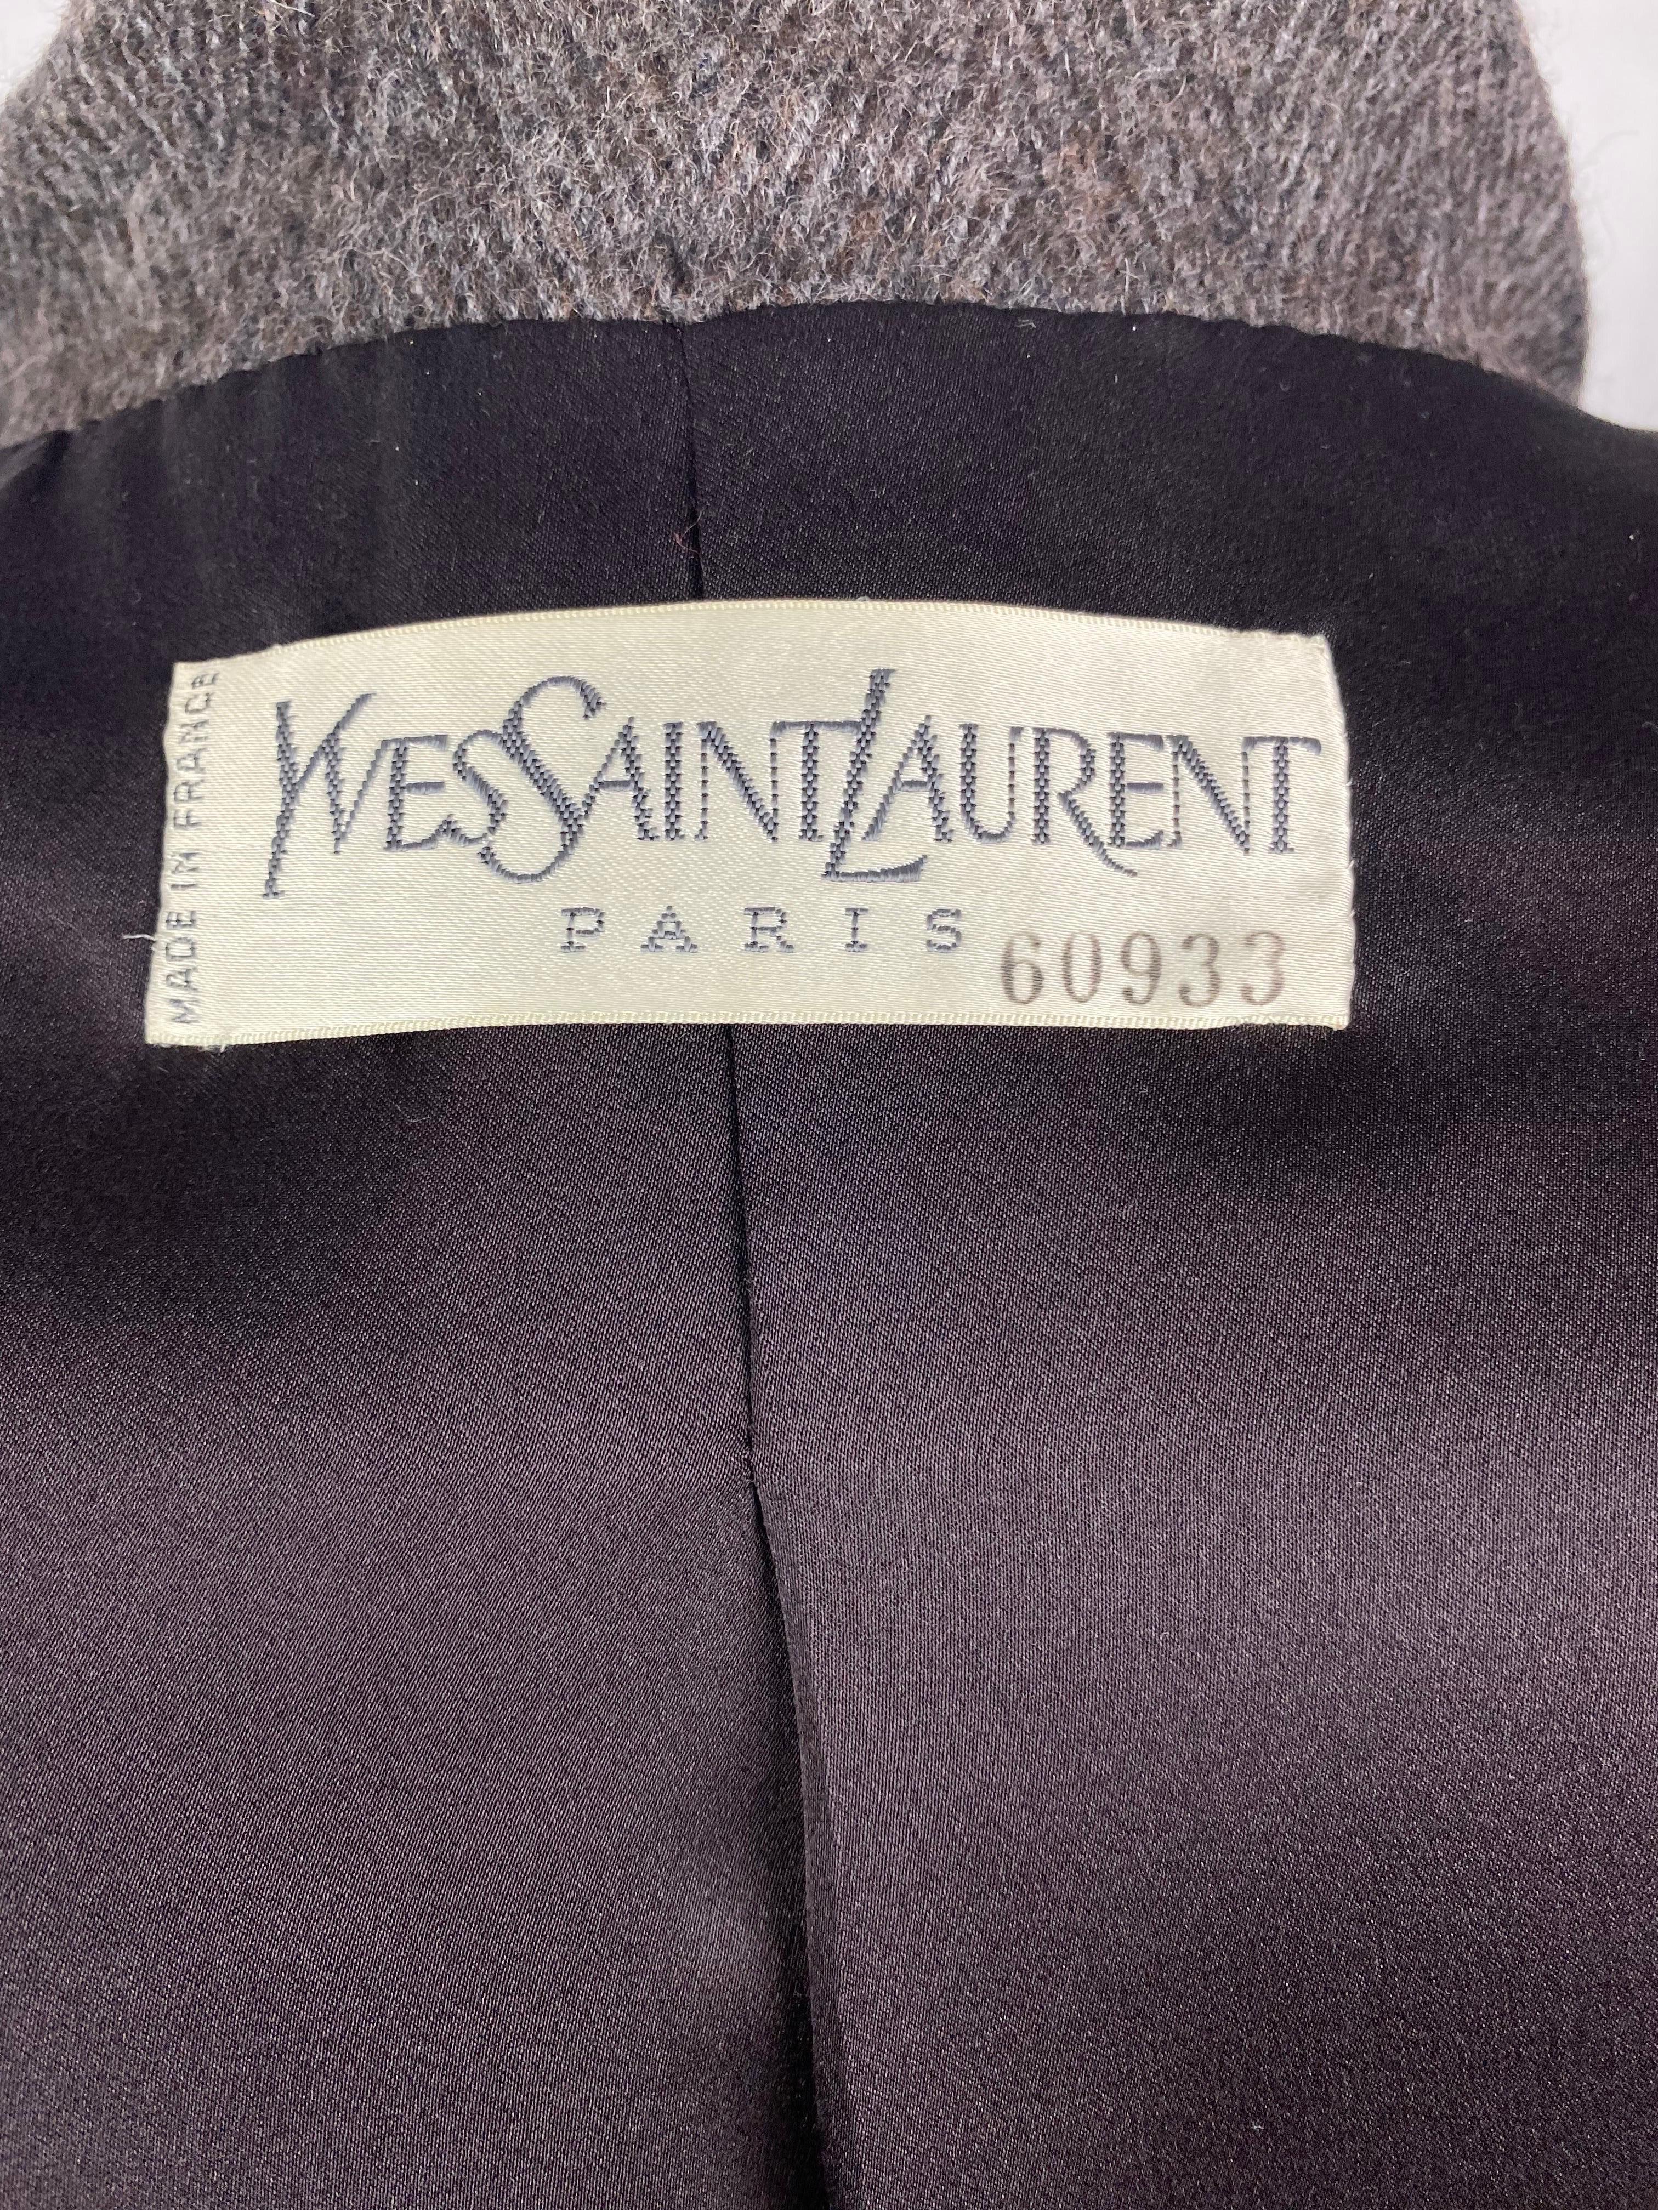 Vintage Yves saint Laurent Haute couture wool jacket  6